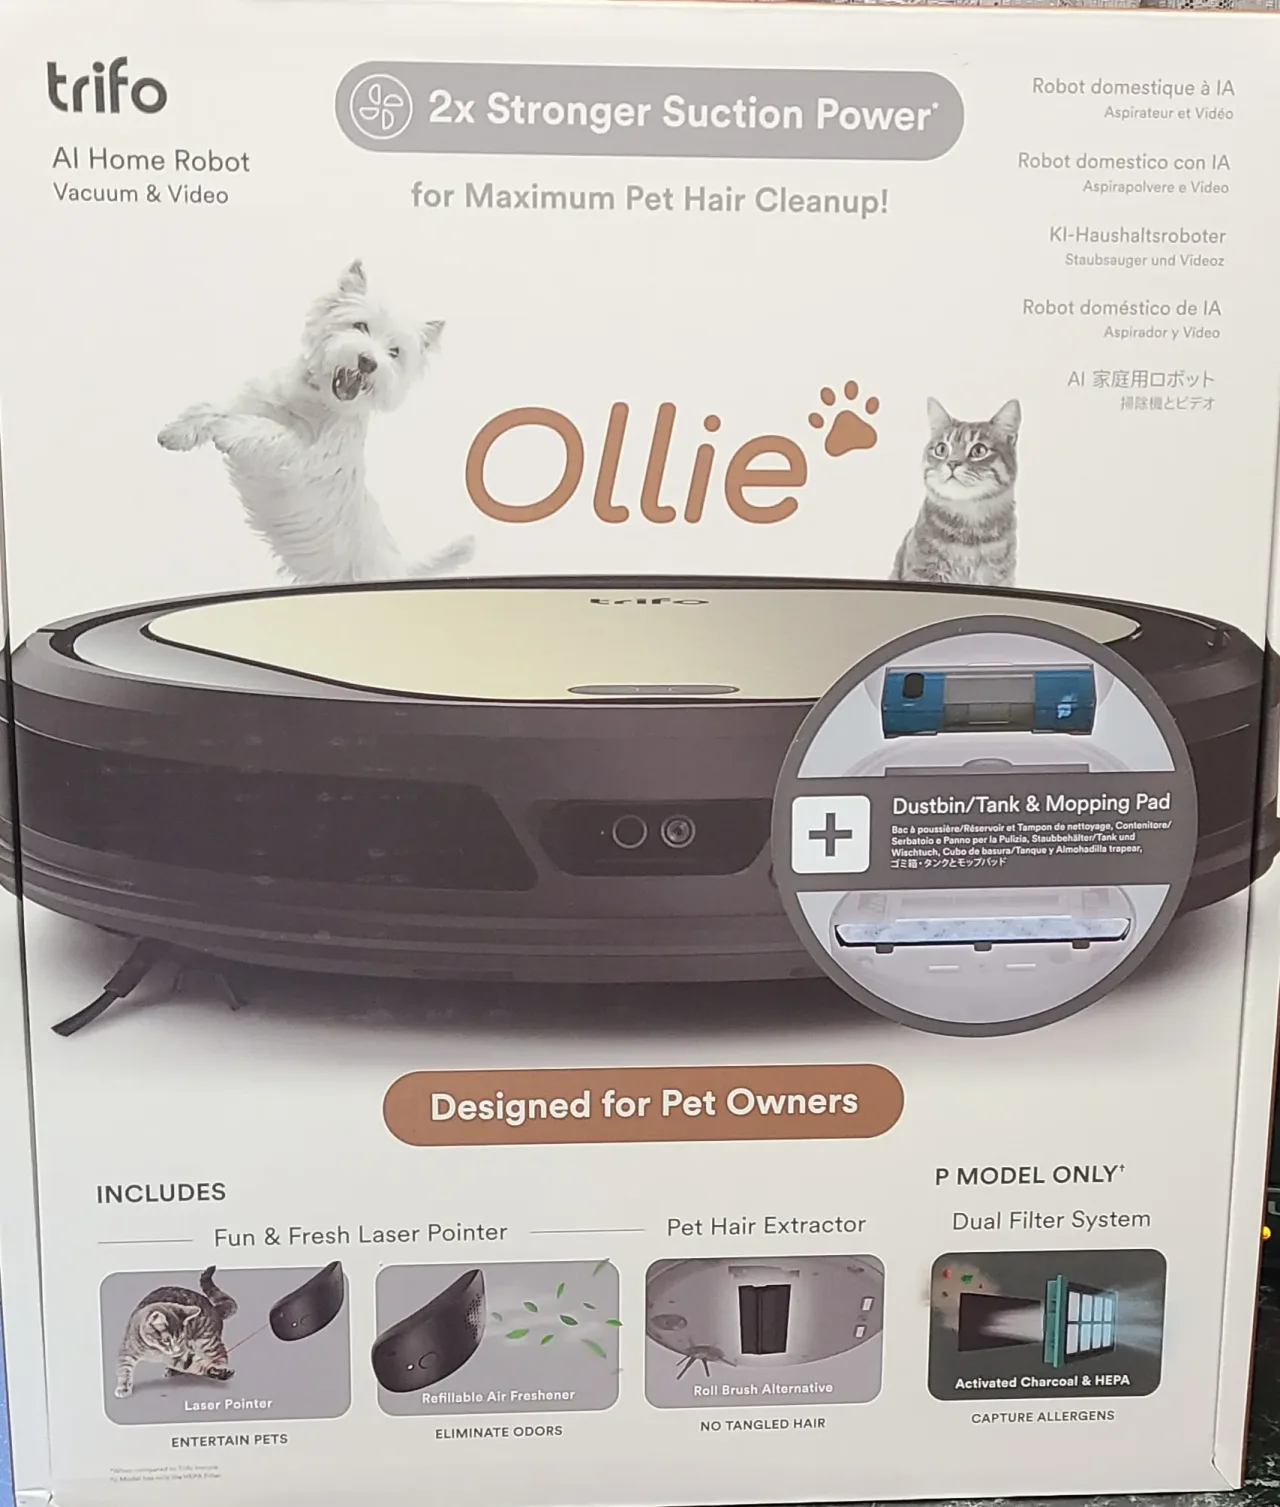 『Ollie』の箱表